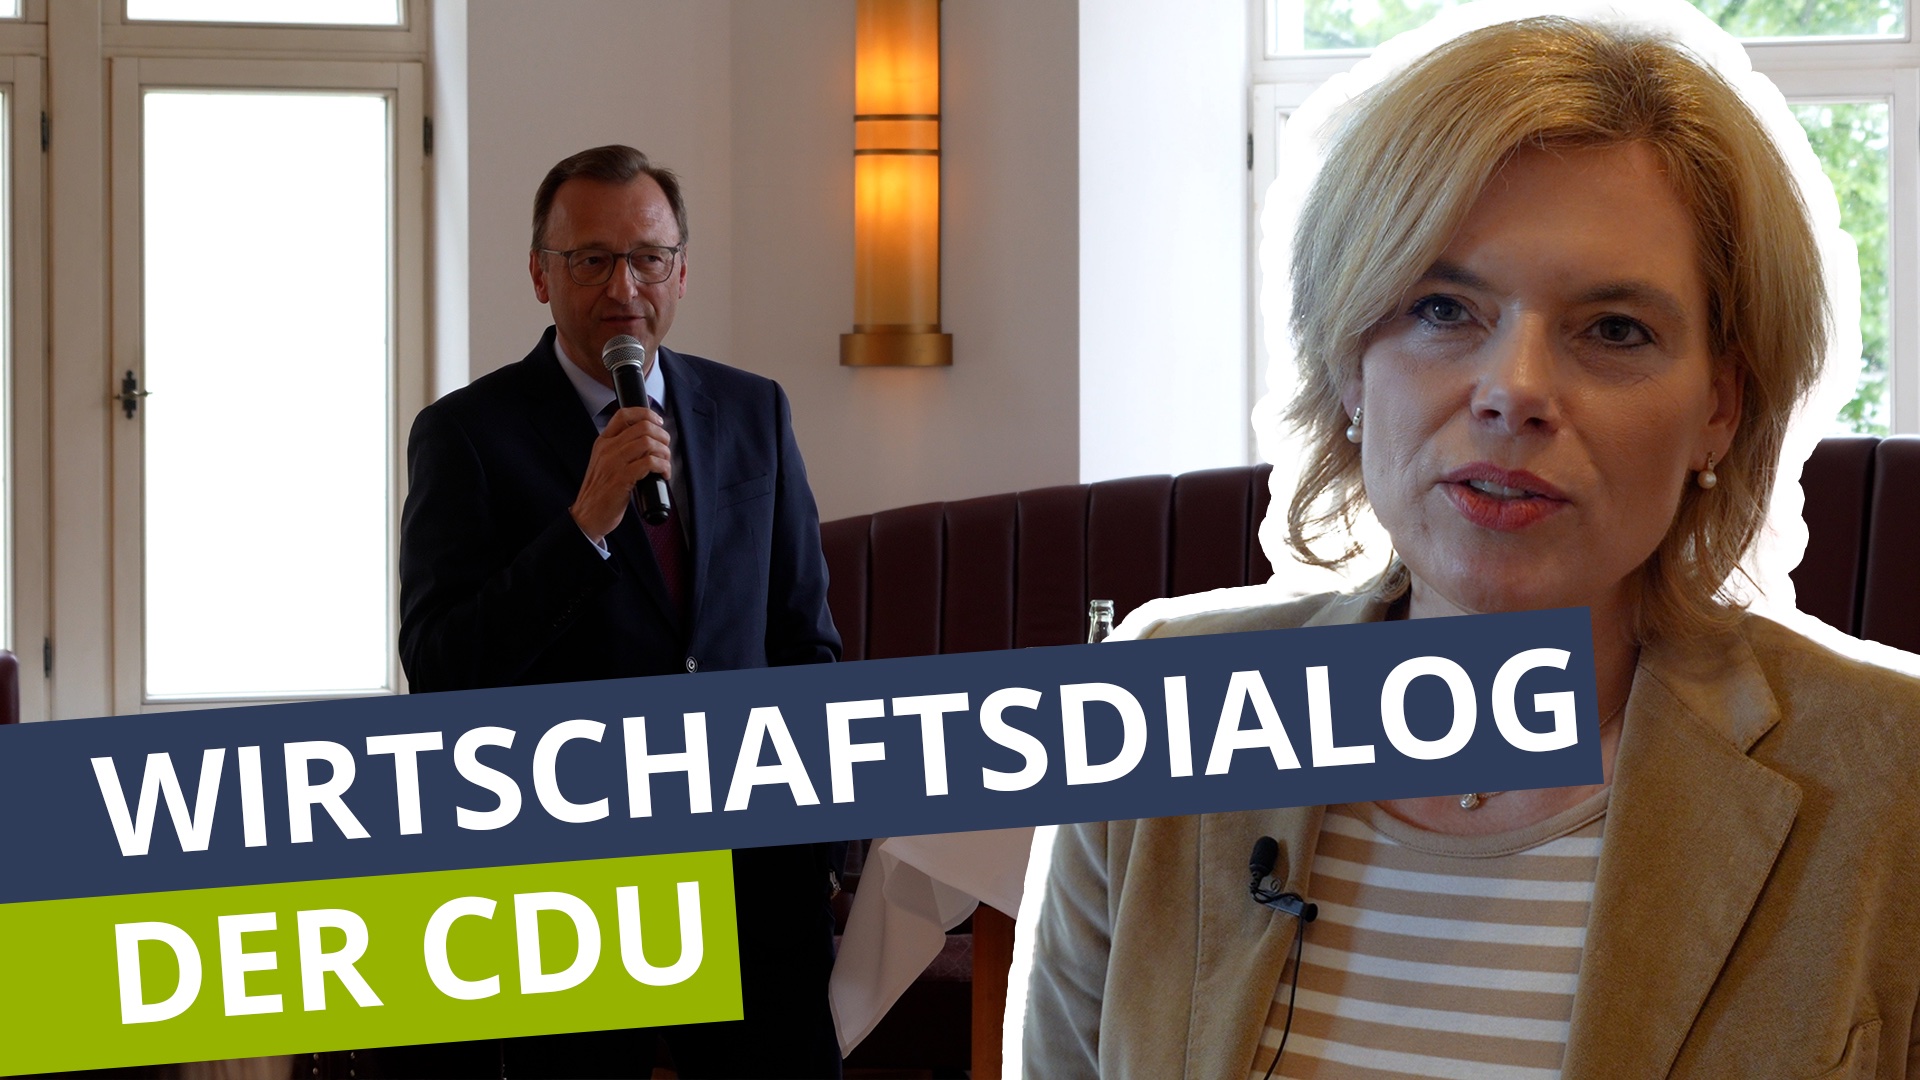 Koblenzer Wirtschaftsdialog der CDU mit Julia Klöckner 